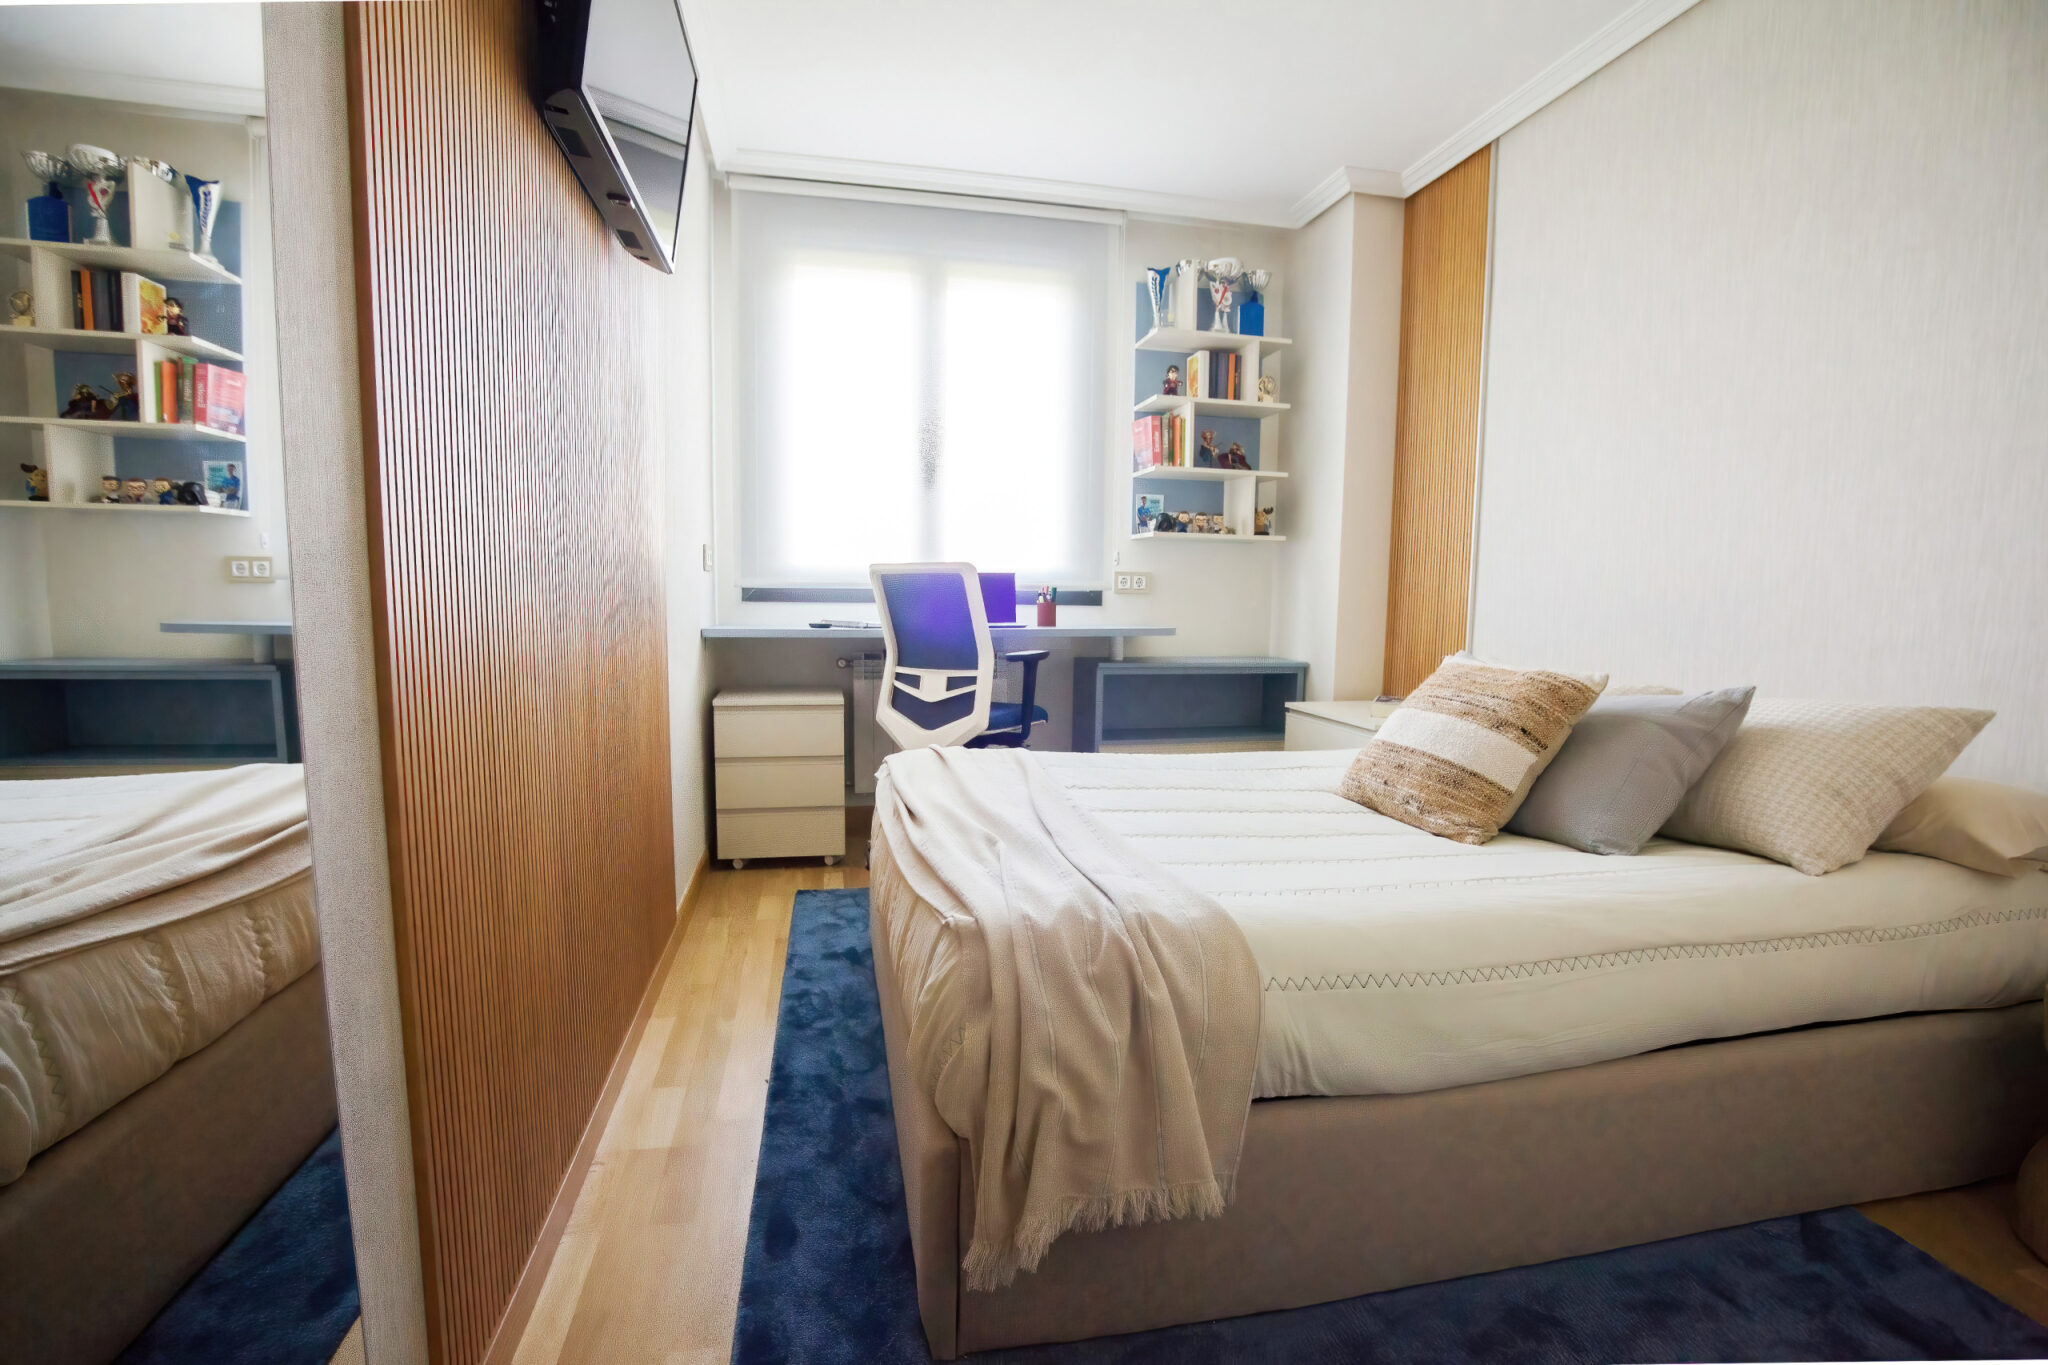 Dormitorio juvenil decorado en tonos beige y azules.